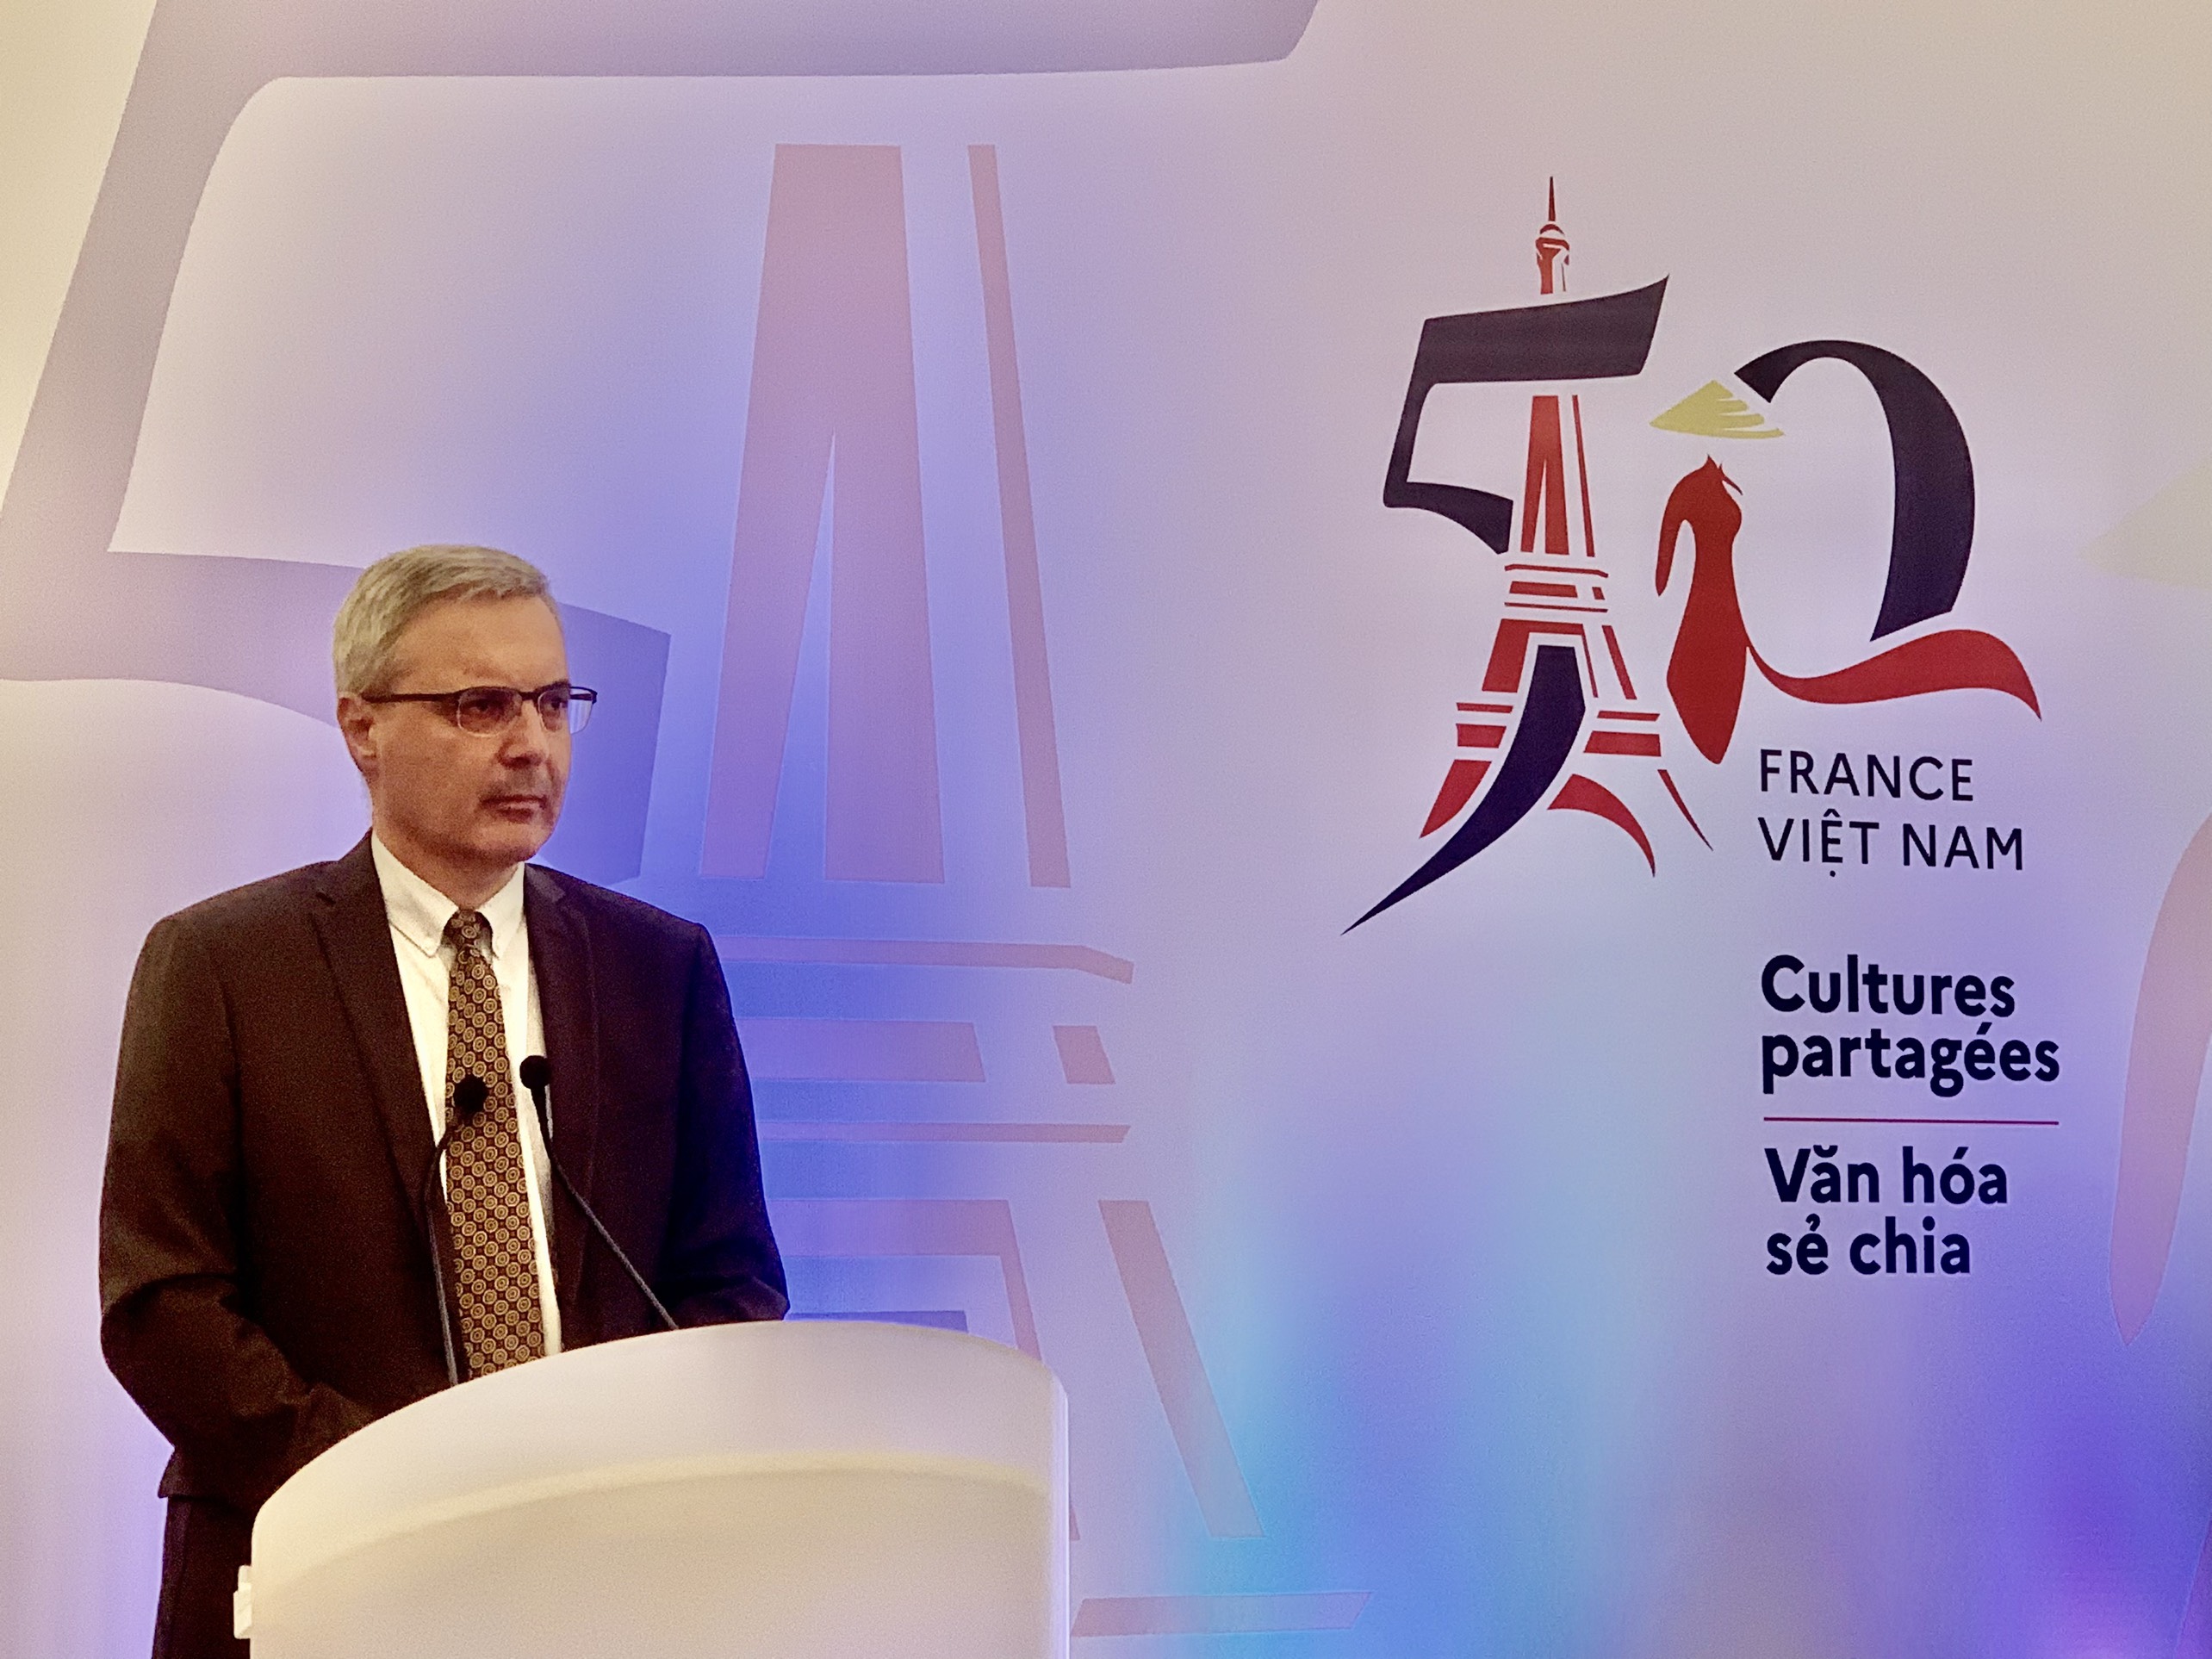 Đại sứ Pháp tại Việt Nam Nicolas Warnery chia sẻ tại buổi họp báo giới thiệu những sự kiện kỷ niệm 50 năm thiết lập quan hệ ngoại giao Việt Nam – Pháp